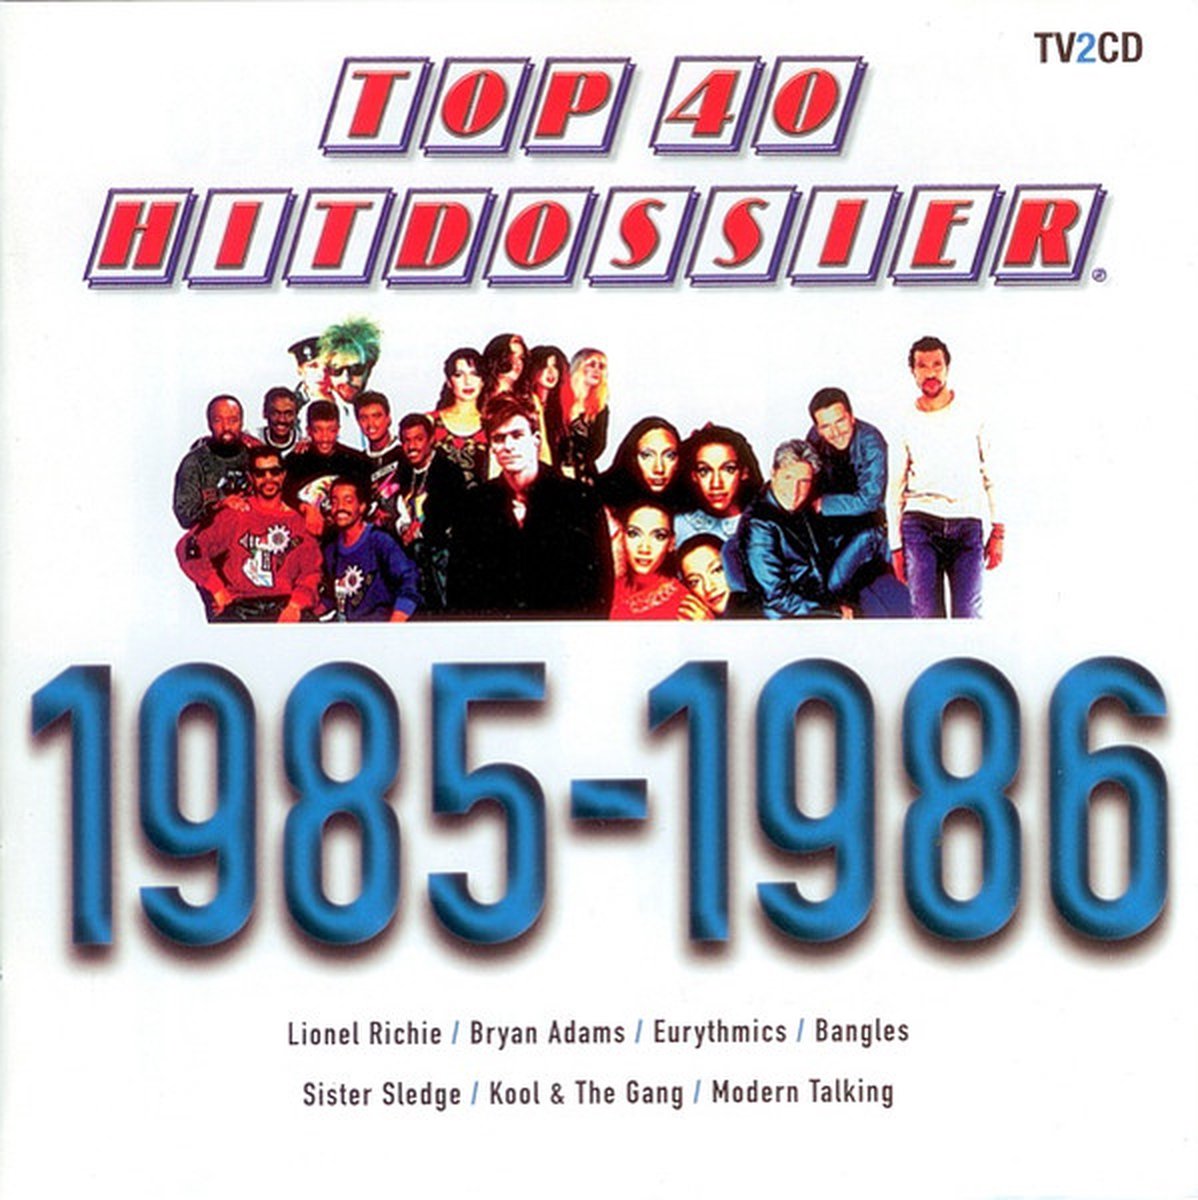 Top 40 Hitdossier 85-86 - Top 40